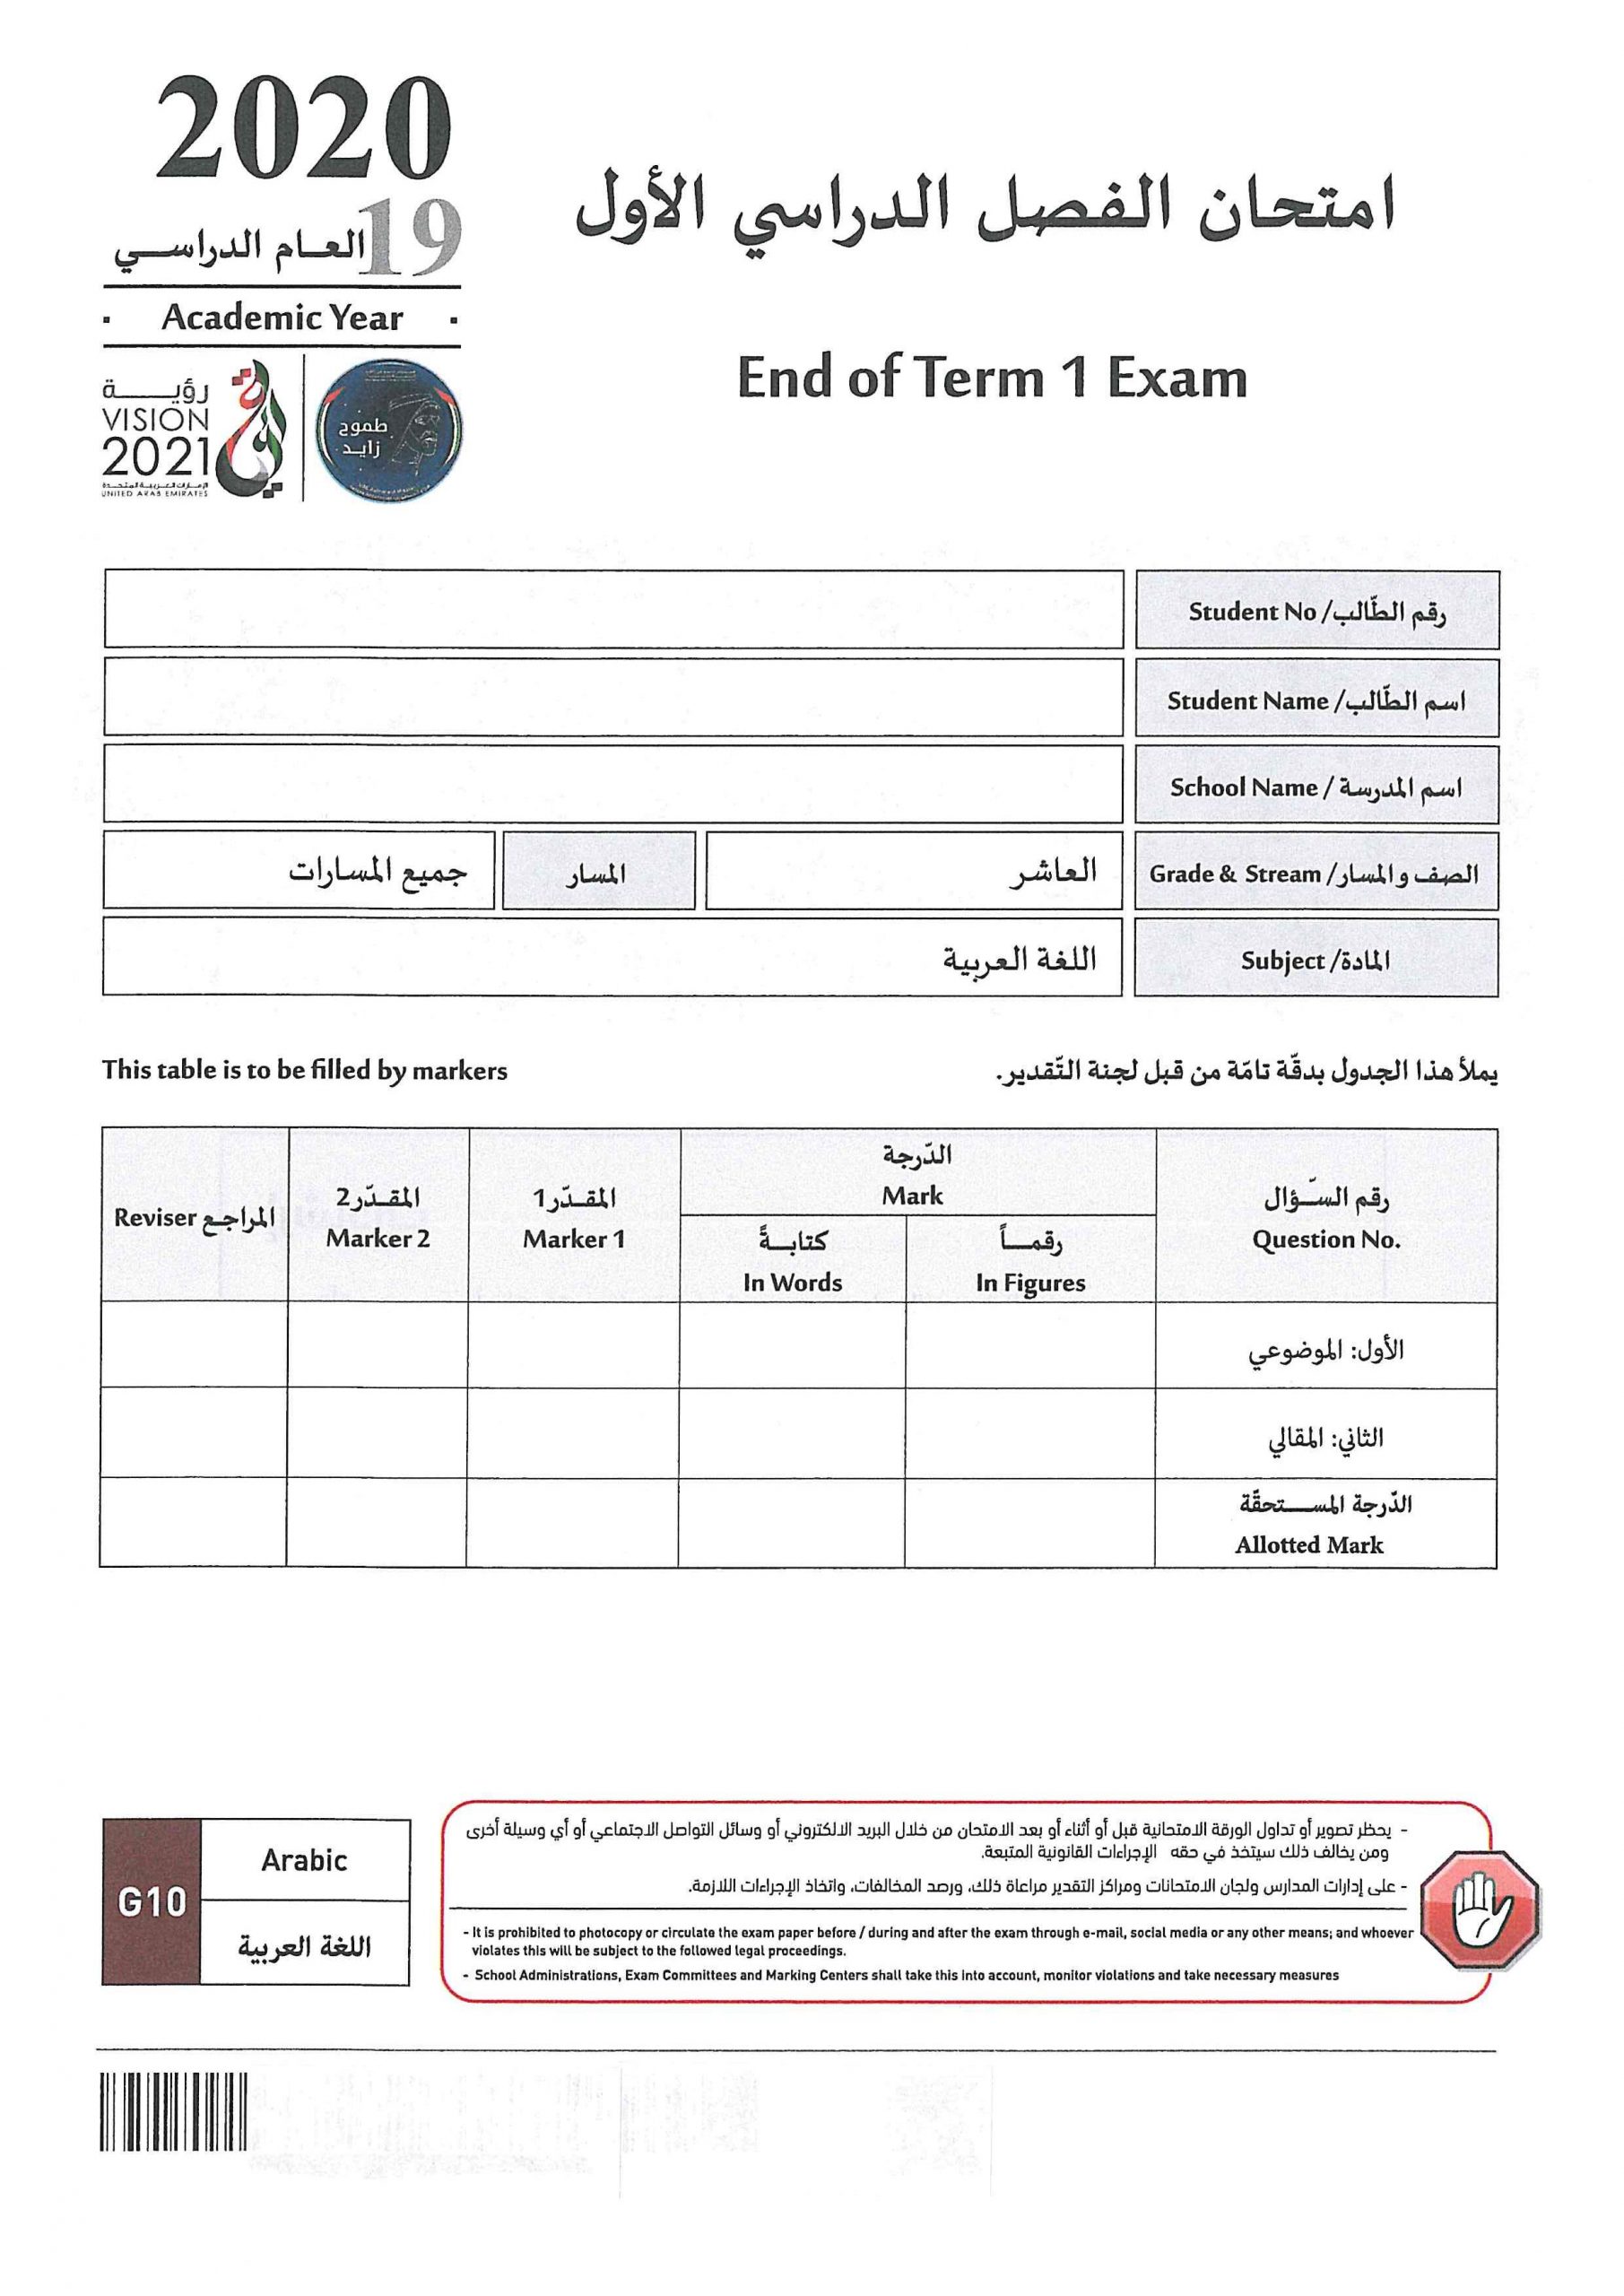 امتحان نهاية الفصل الدراسي الاول 2019-2020 الصف العاشر مادة اللغة العربية